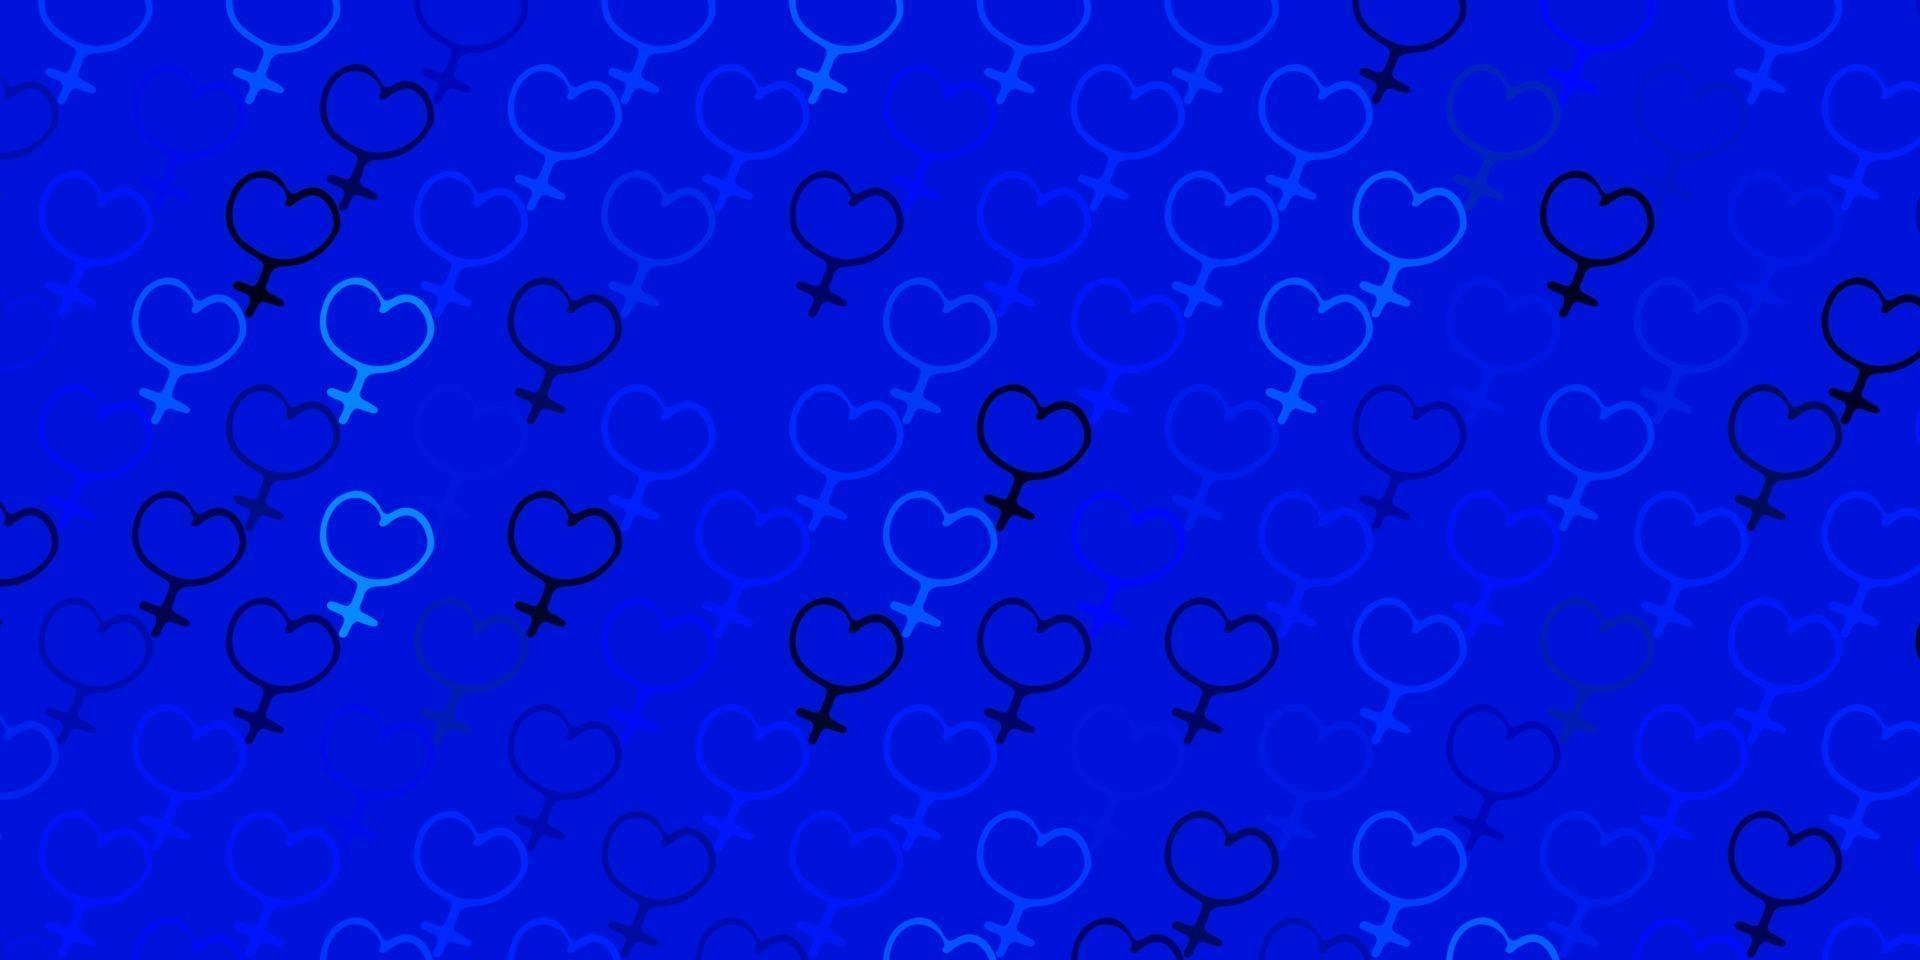 sfondo vettoriale azzurro con simboli di donna.